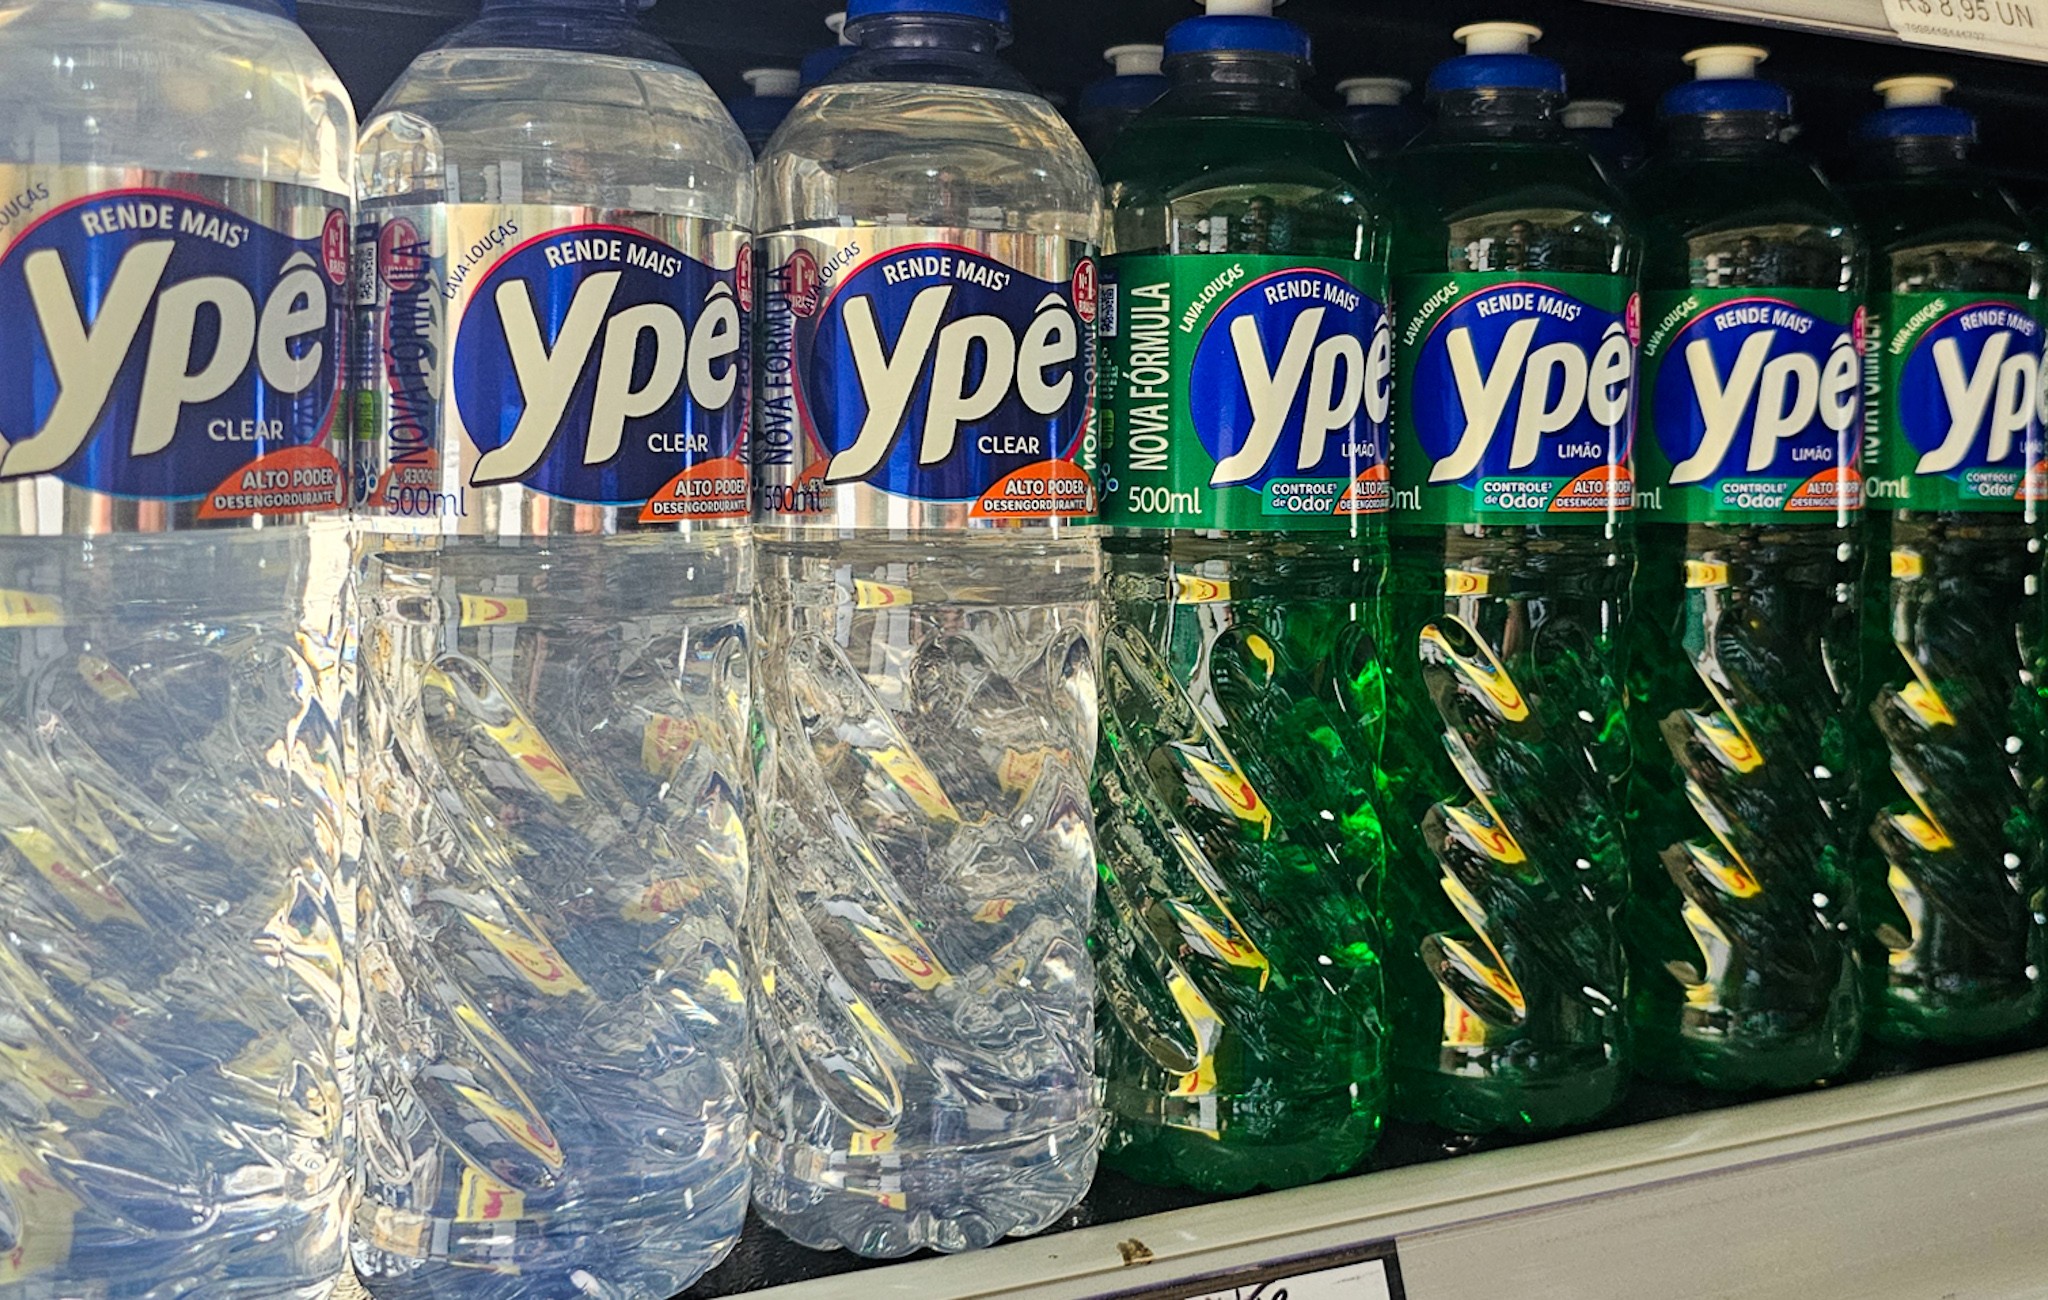 Anvisa suspende lotes de detergente Ypê por risco de contaminação; veja lista